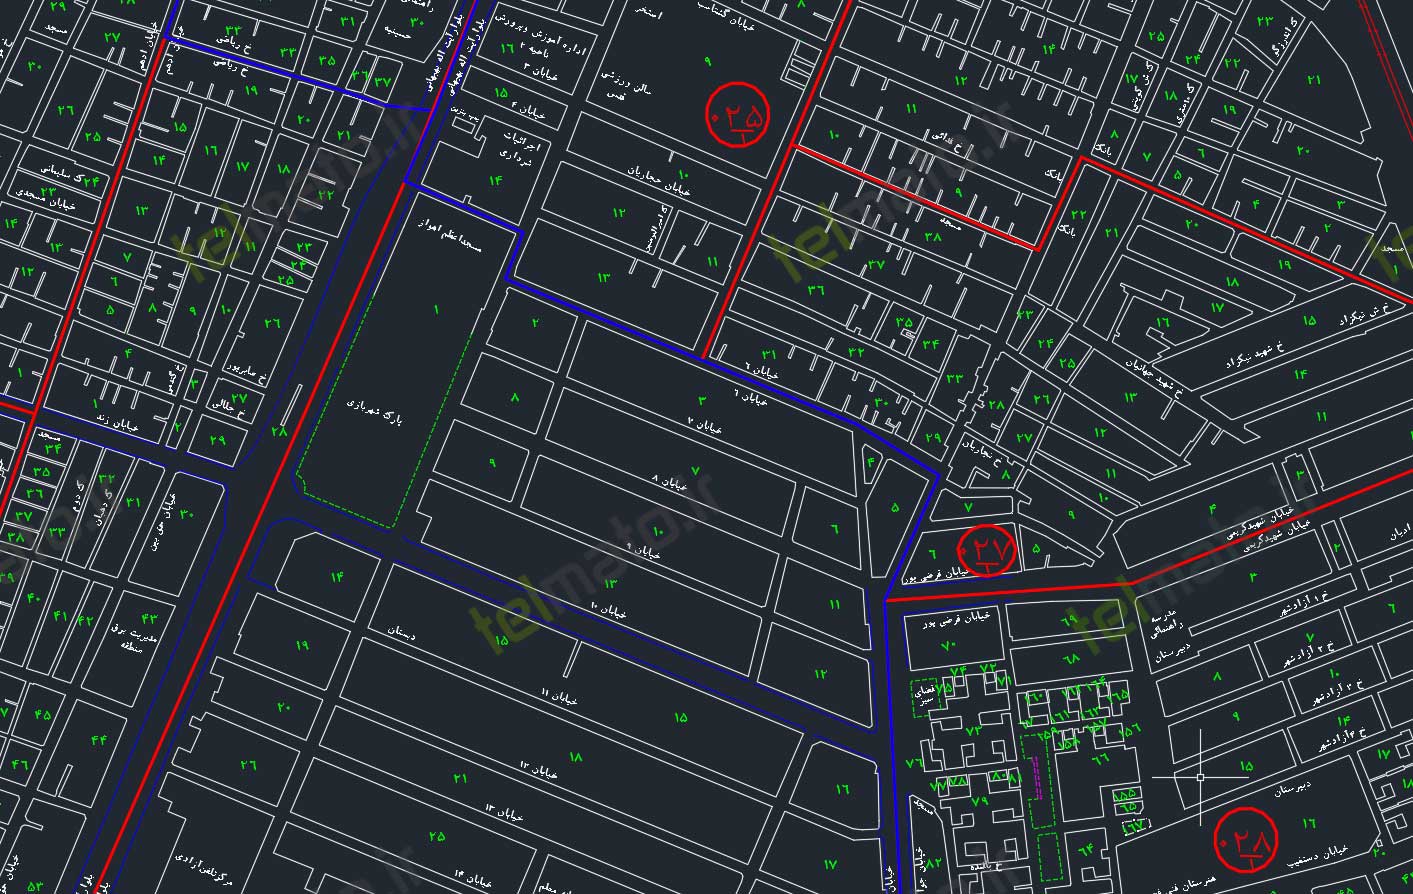 دانلود رایگان نقشه اتوکد شهر اهواز ahvaz autocad map DWG + دانلود فایل طرح تفضیلی 